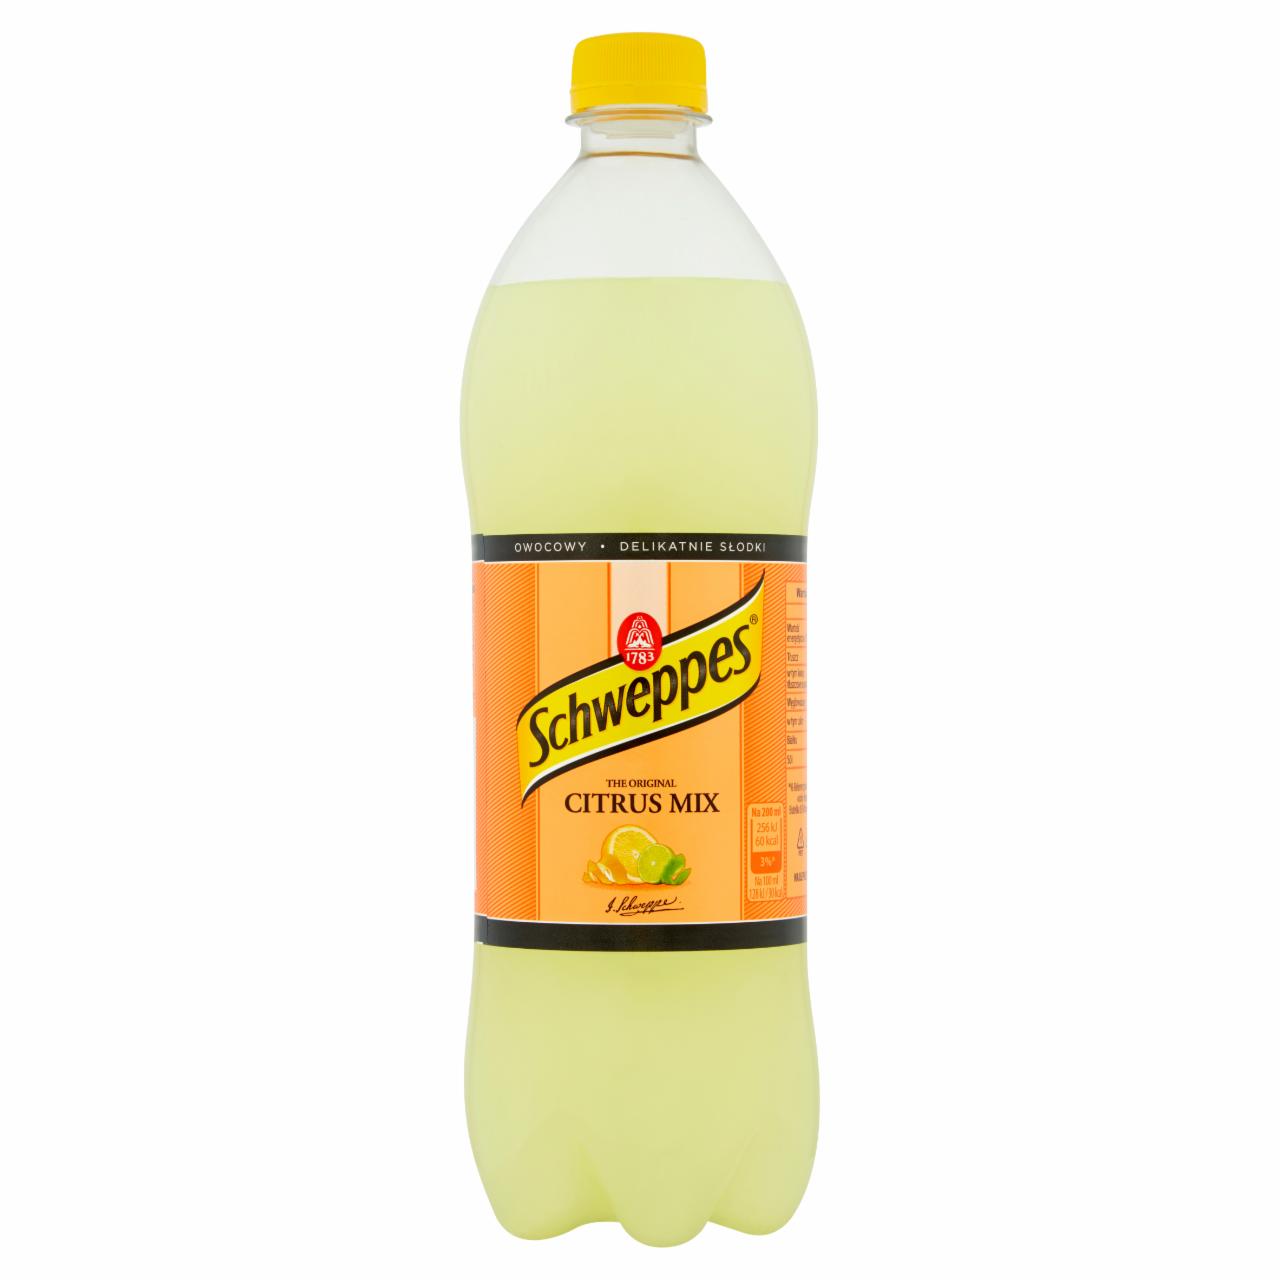 Zdjęcia - Schweppes Citrus Mix Napój gazowany 0,85 l